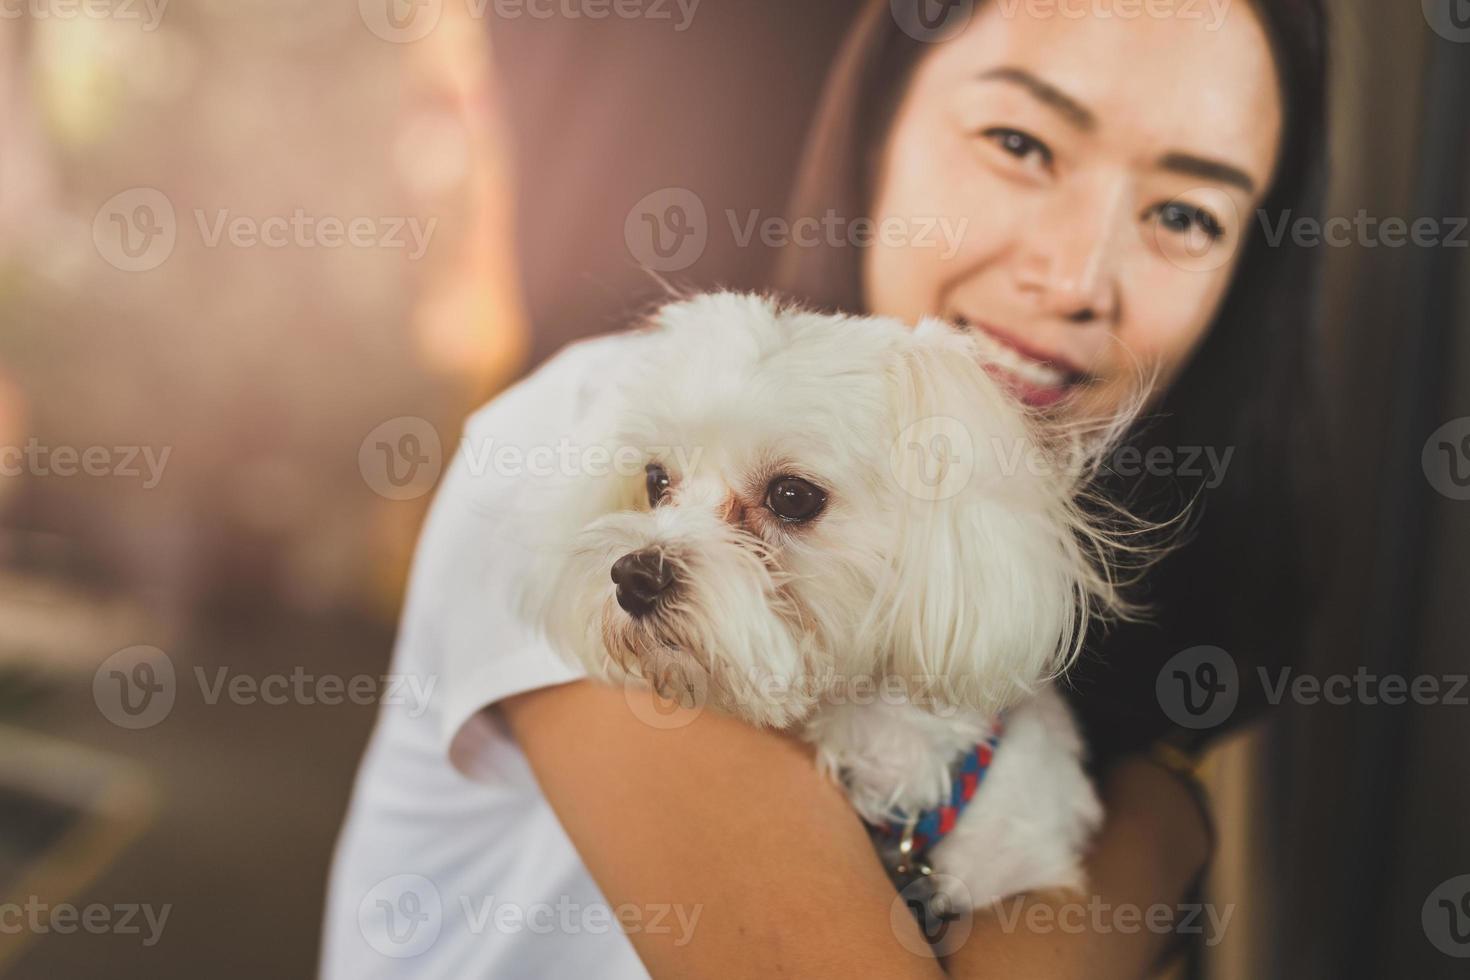 vrouw is huisdiereneigenaar die kleine hond houdt foto